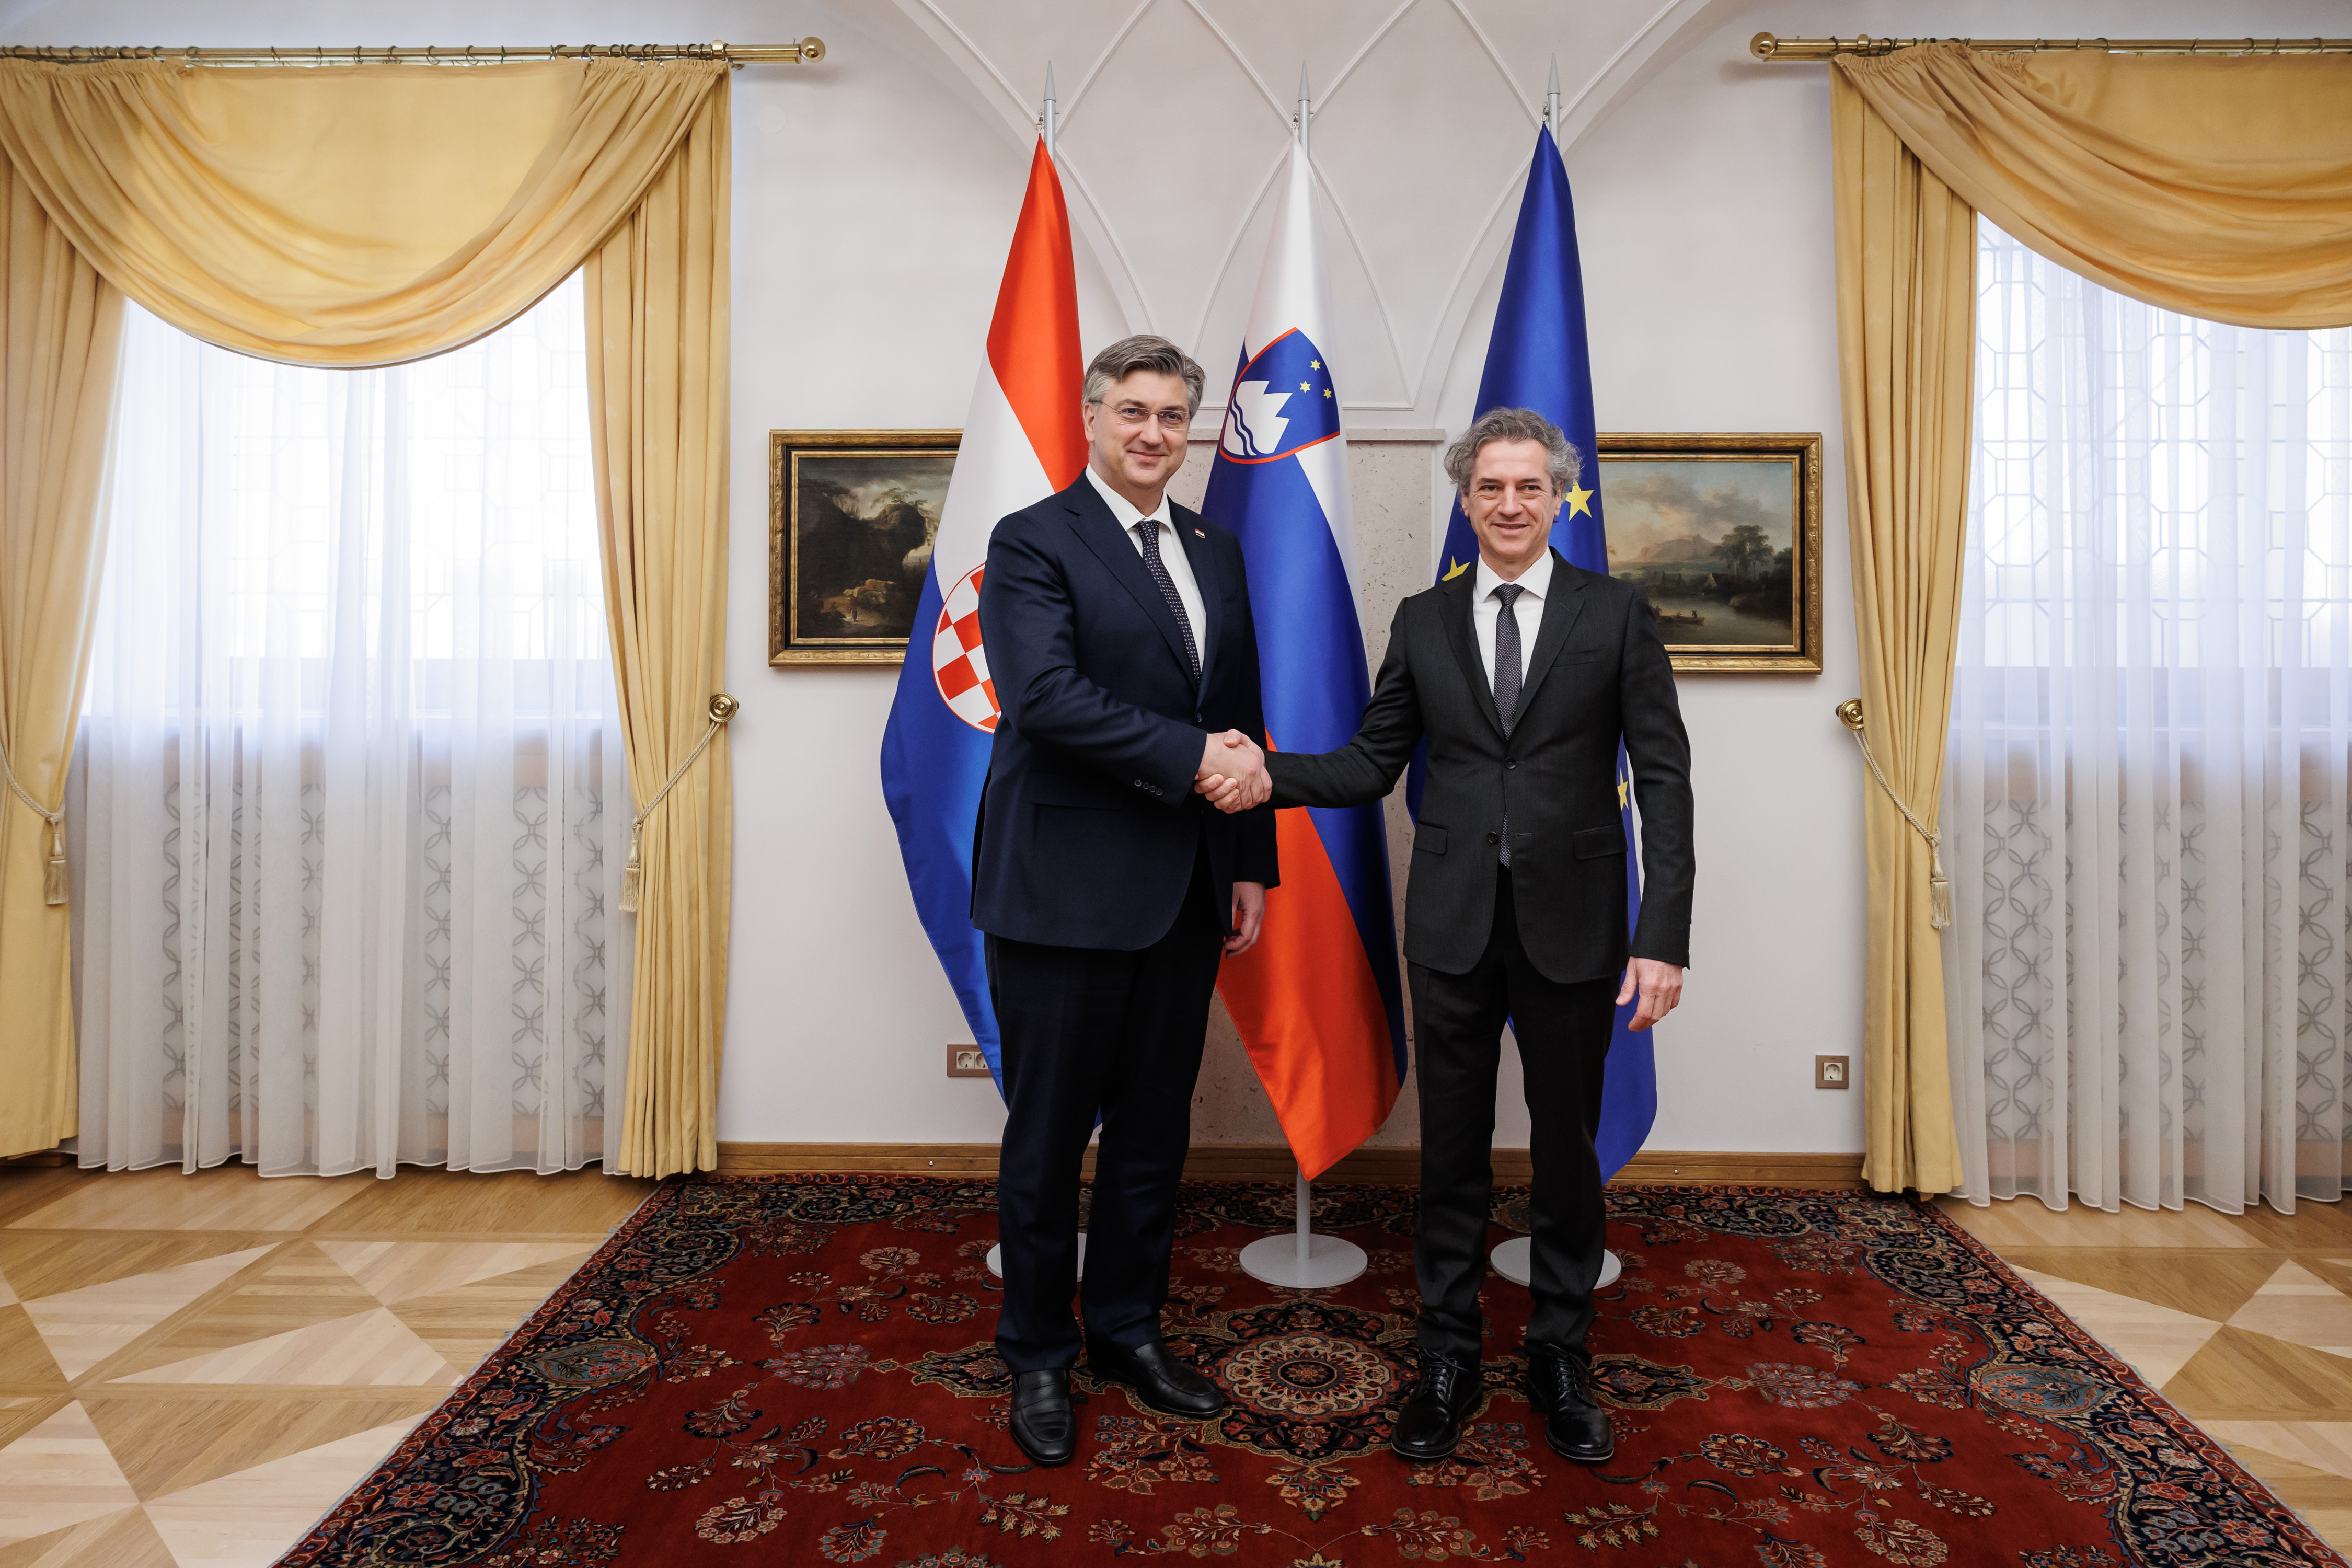 Premierja Slovenije in Hrvaške o sodelovanju na področju energetike, migracij in gospodarstva